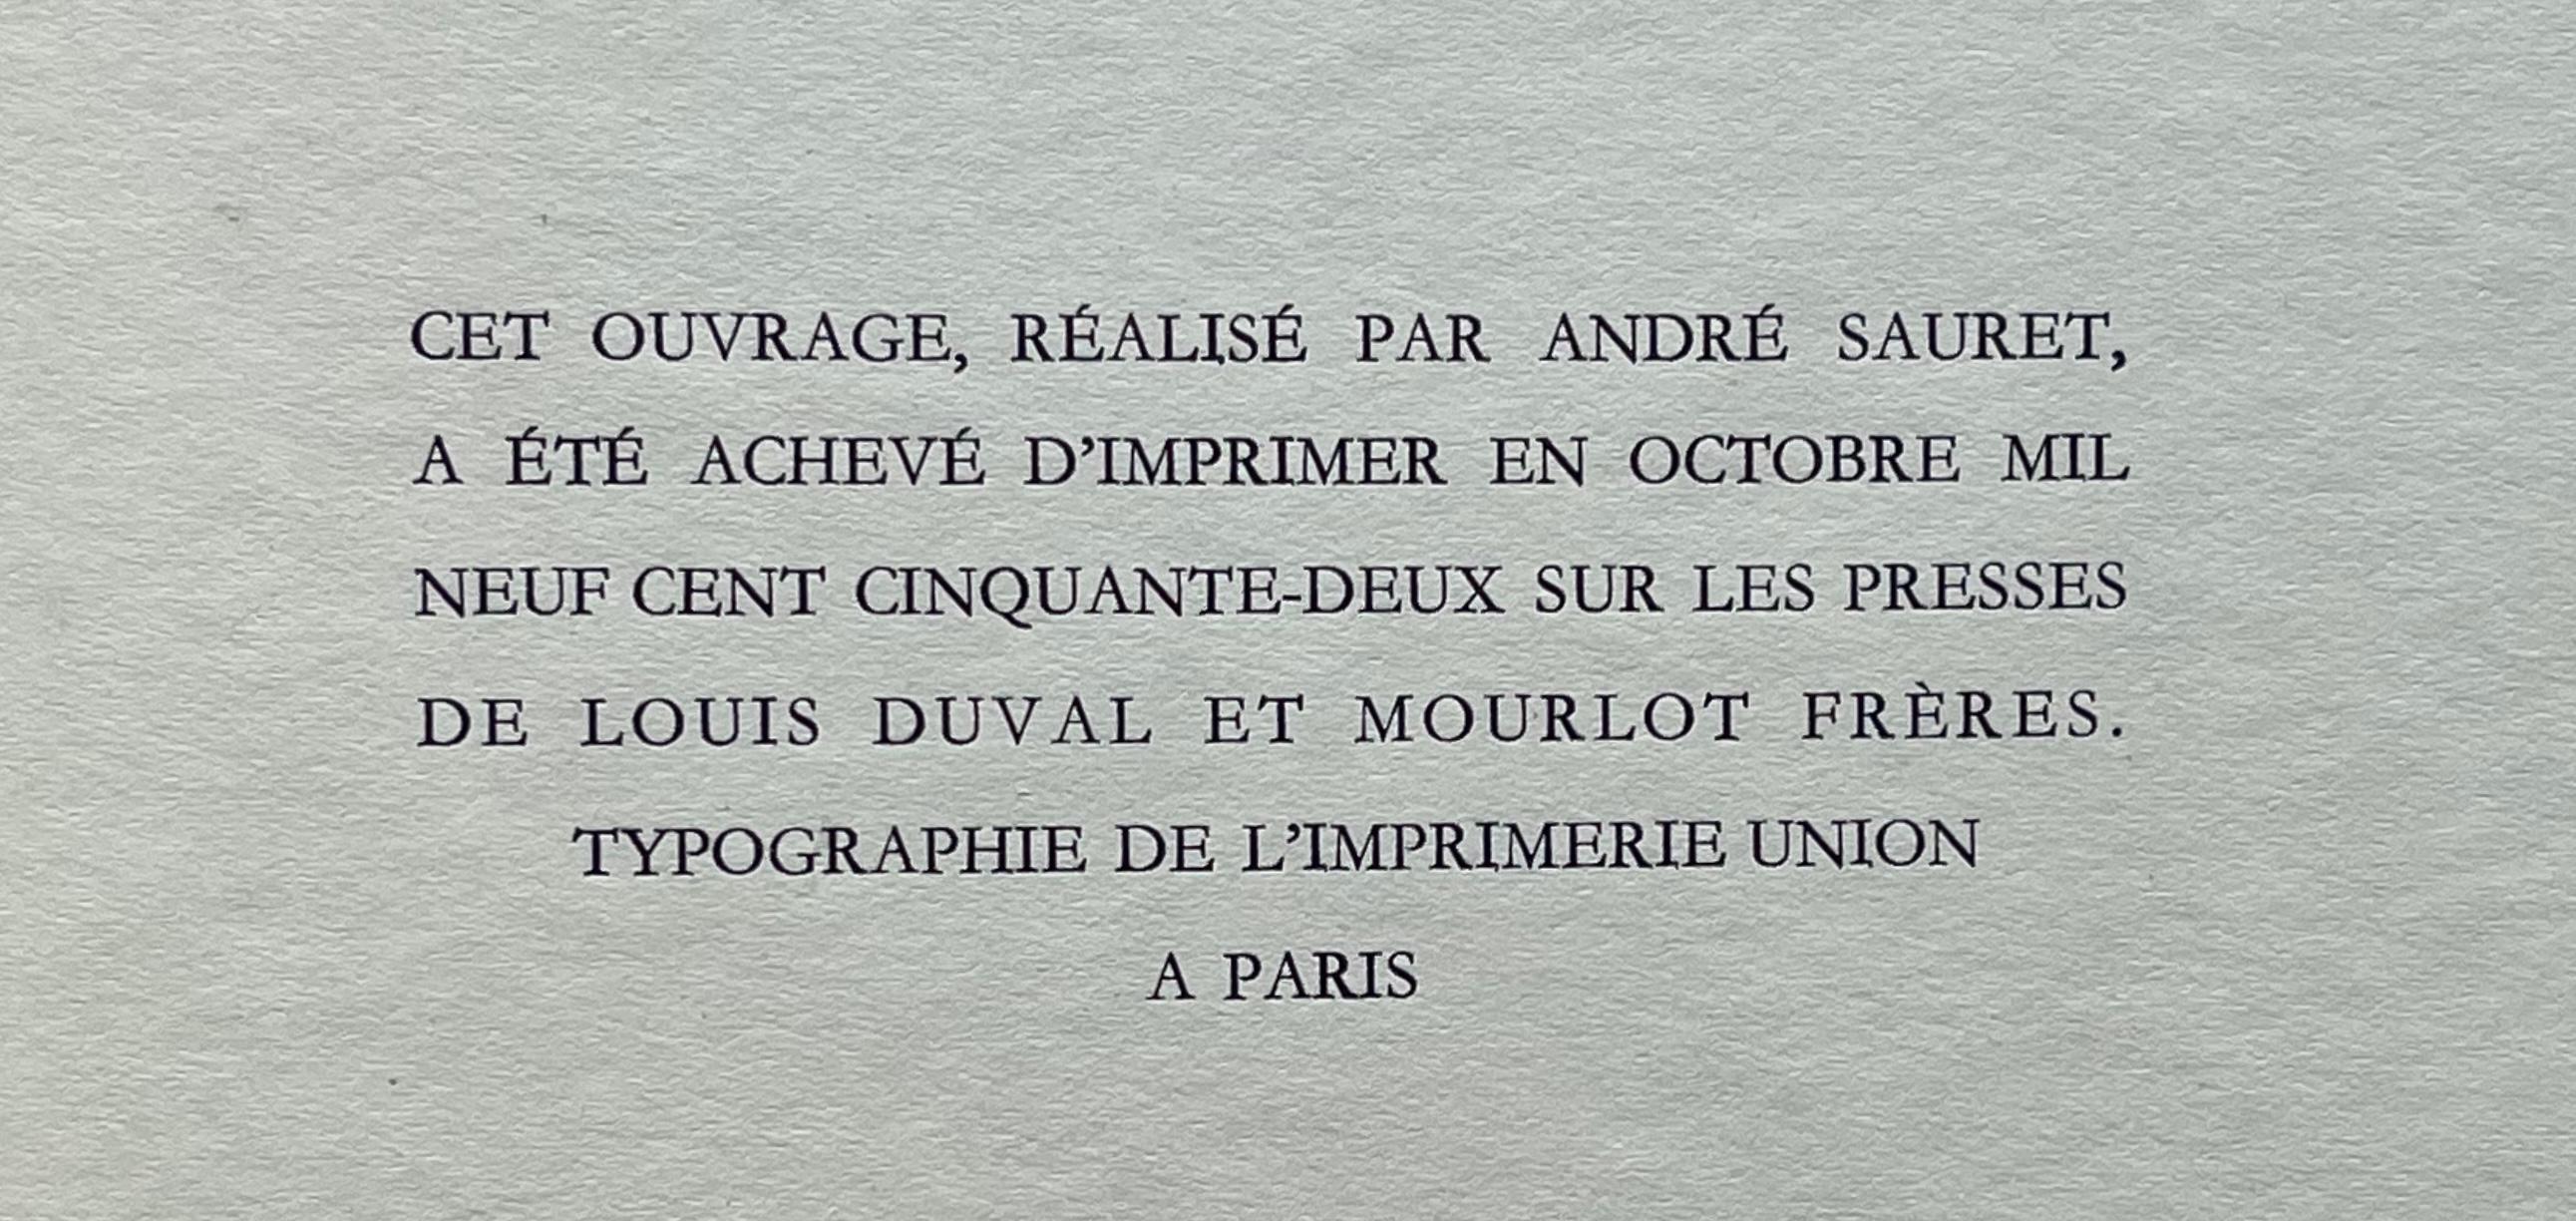 Toulouse-Lautrec, Dans les coulisses, The Circus by Toulouse-Lautrec (after) For Sale 5